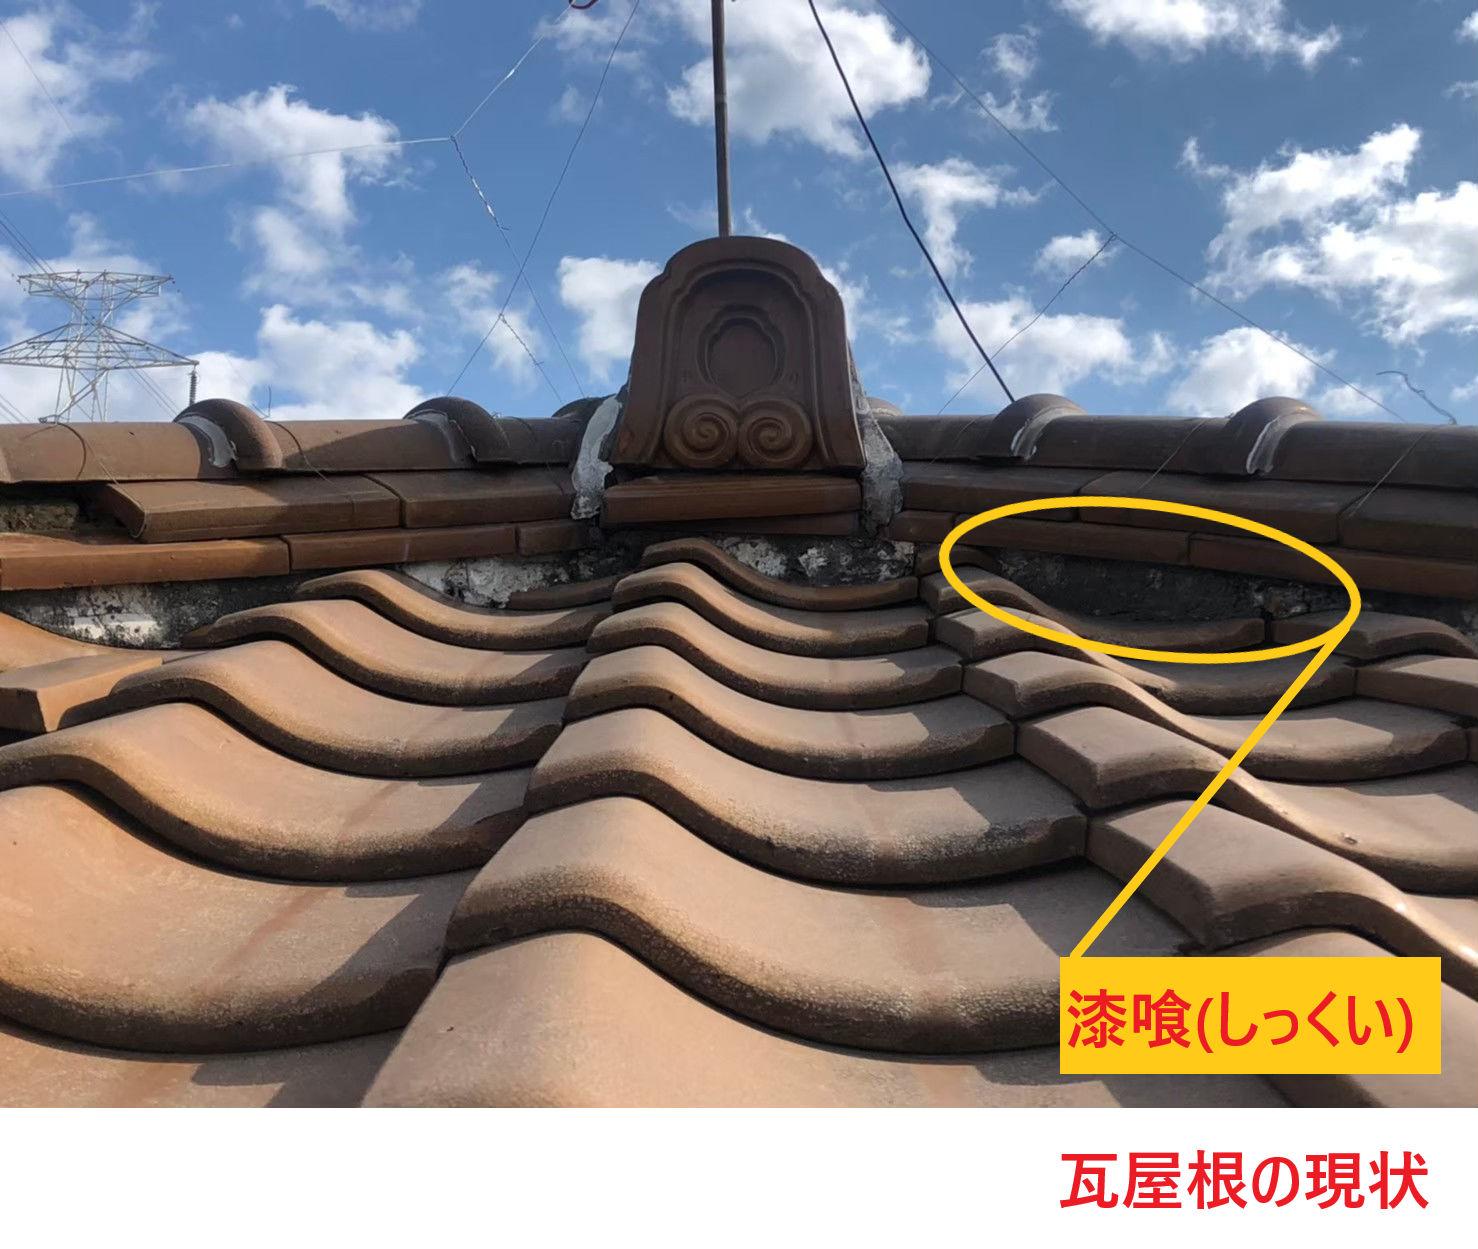 滋賀県草津市笠山で瓦屋根の屋根漆喰工事の詰め直しを実施致しました